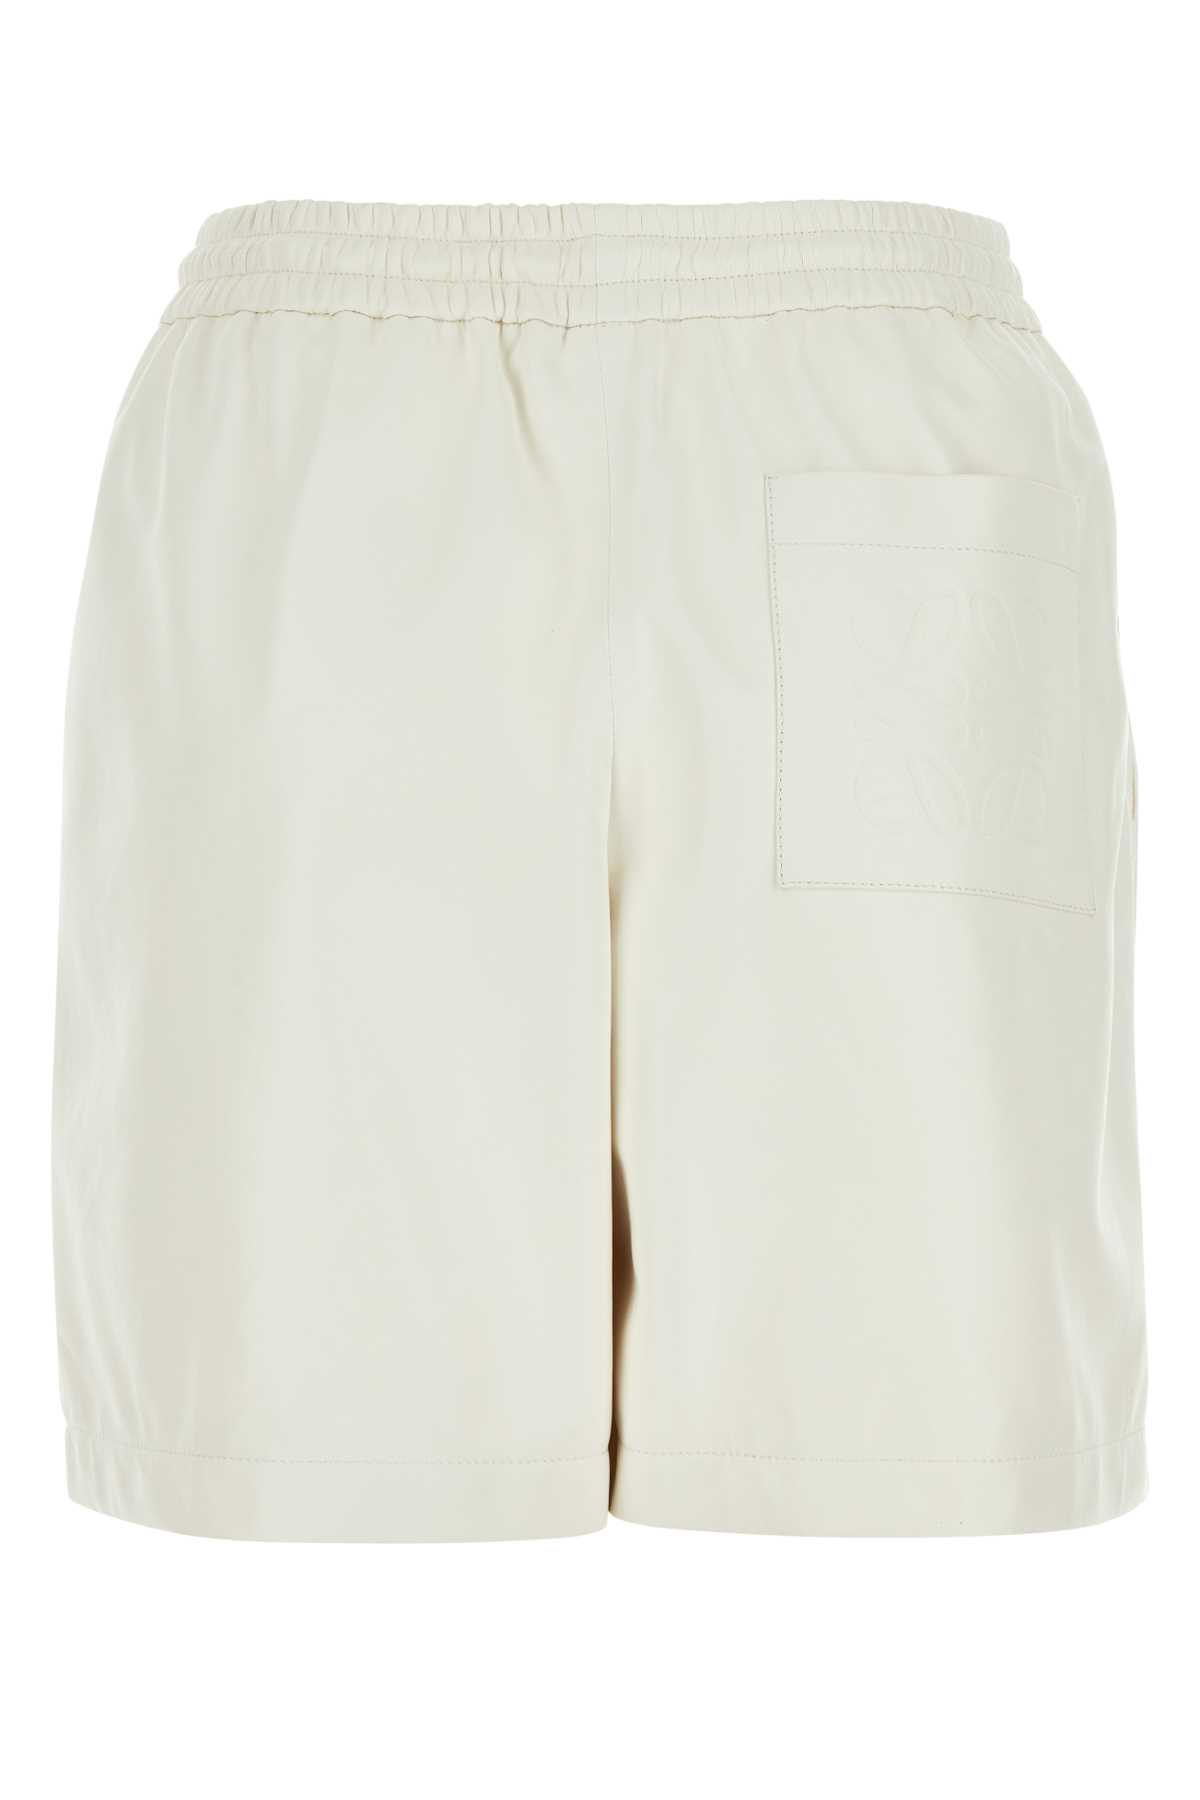 Loewe White Leather Shorts